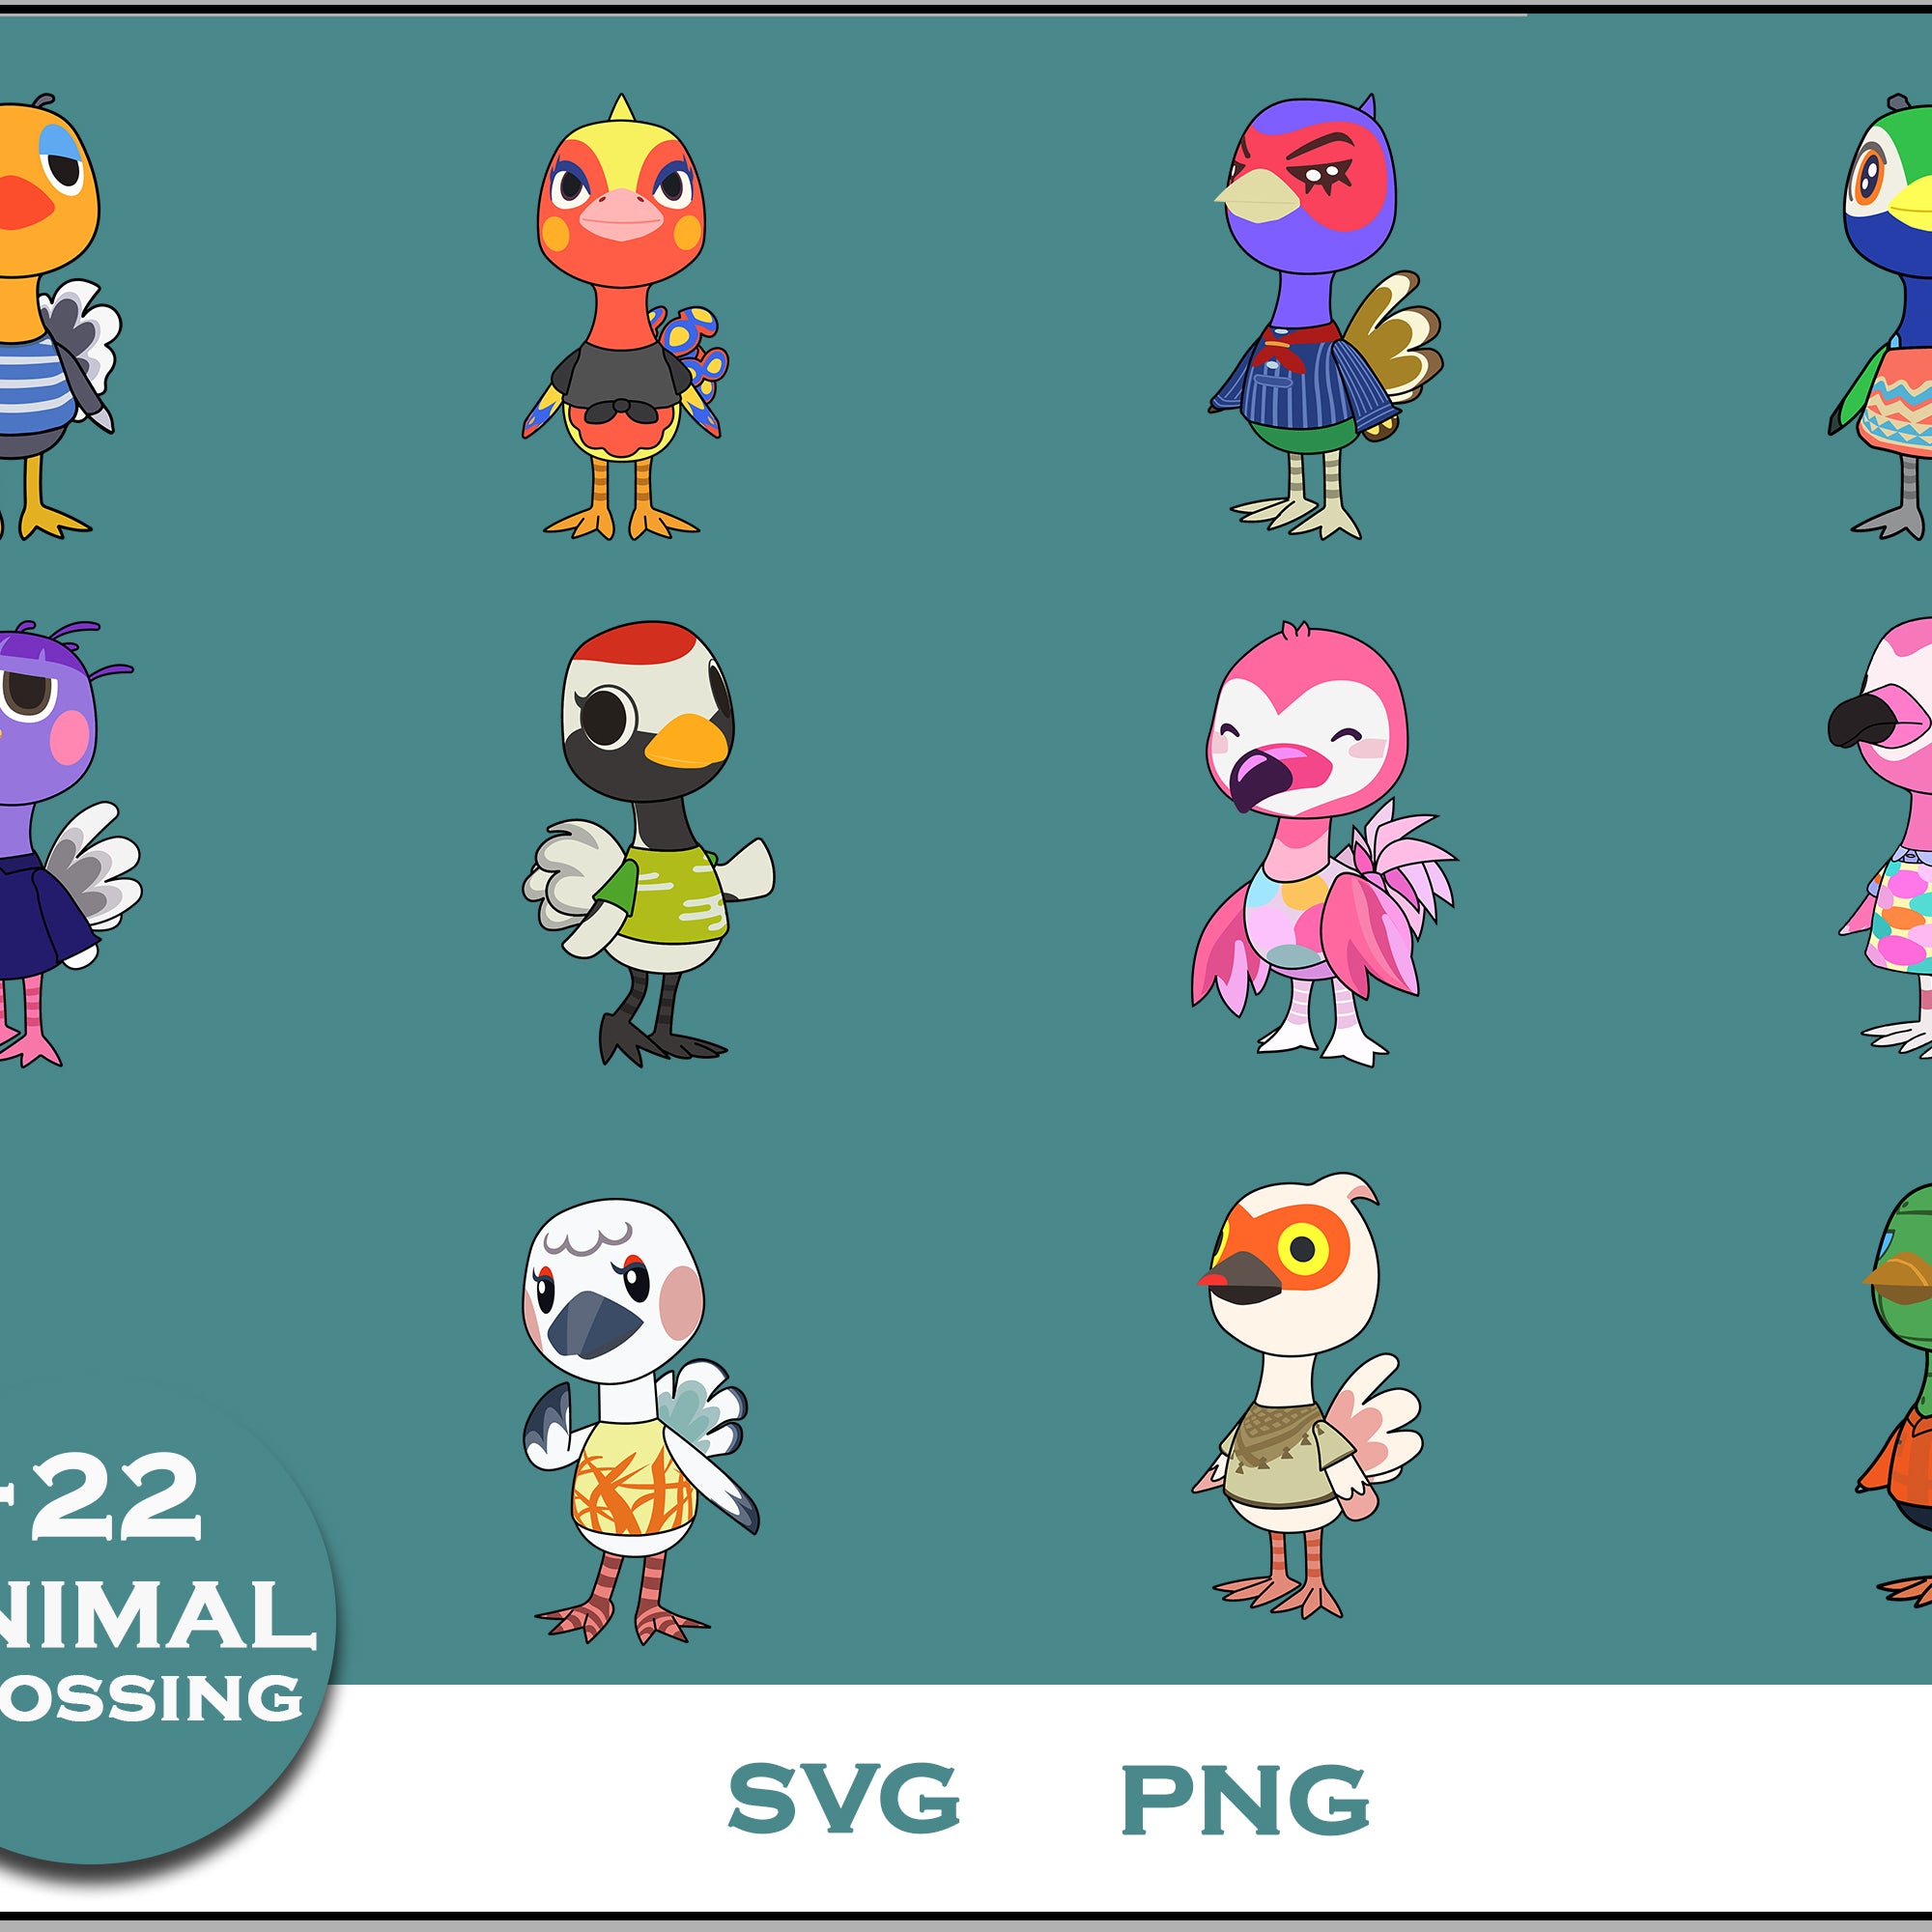 22+ Ostrichs Svg Bundle, Animal Crossing Svg Bundle, Animal Crossing Svg, Cartoon svg, png digital file